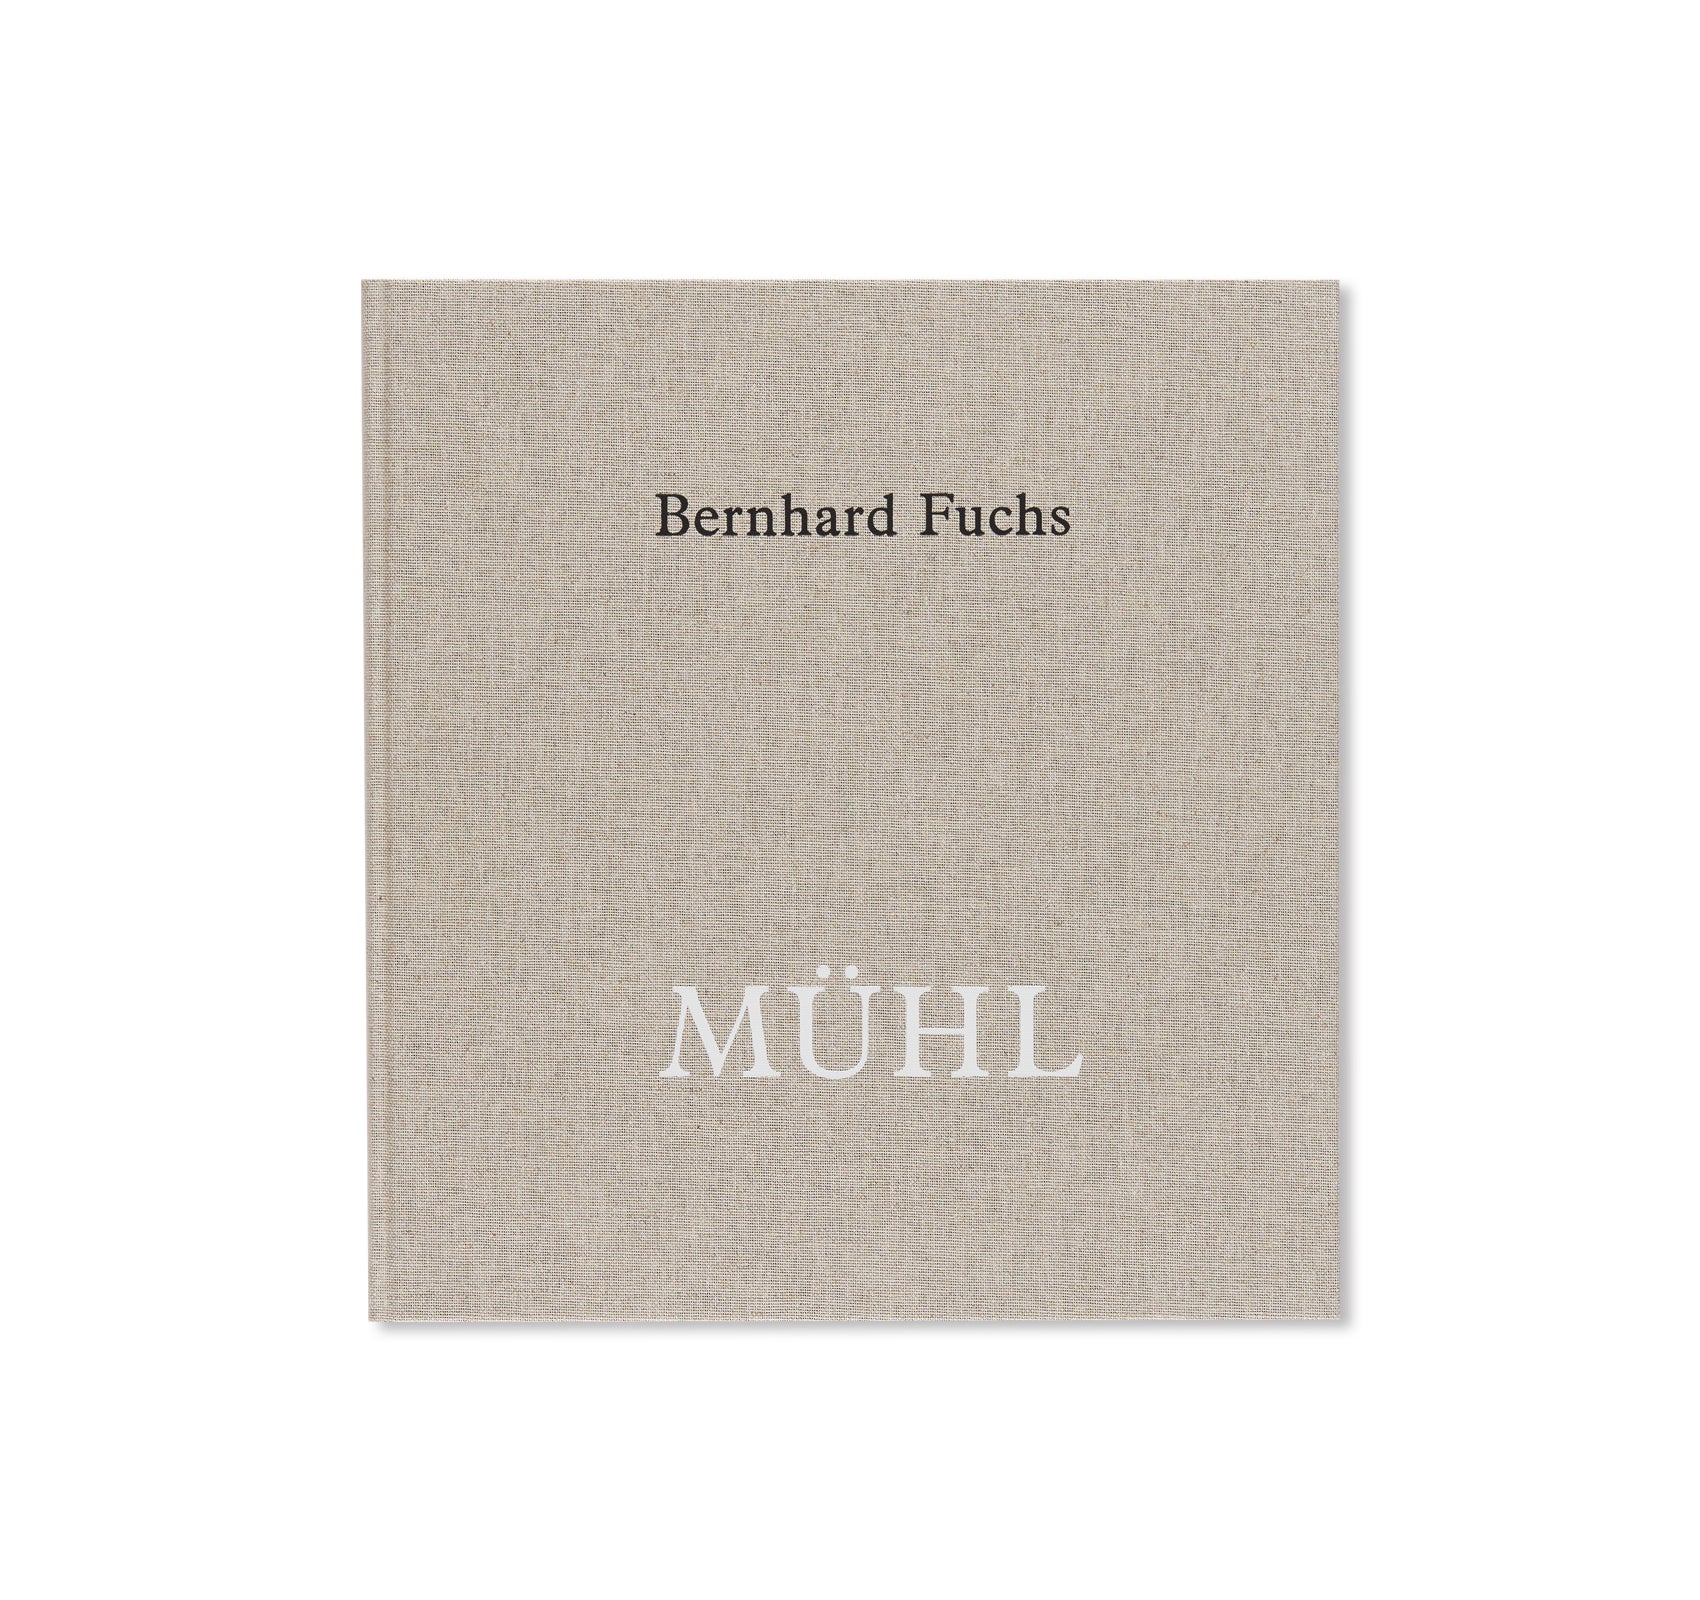 MÜHL by Bernhard Fuchs